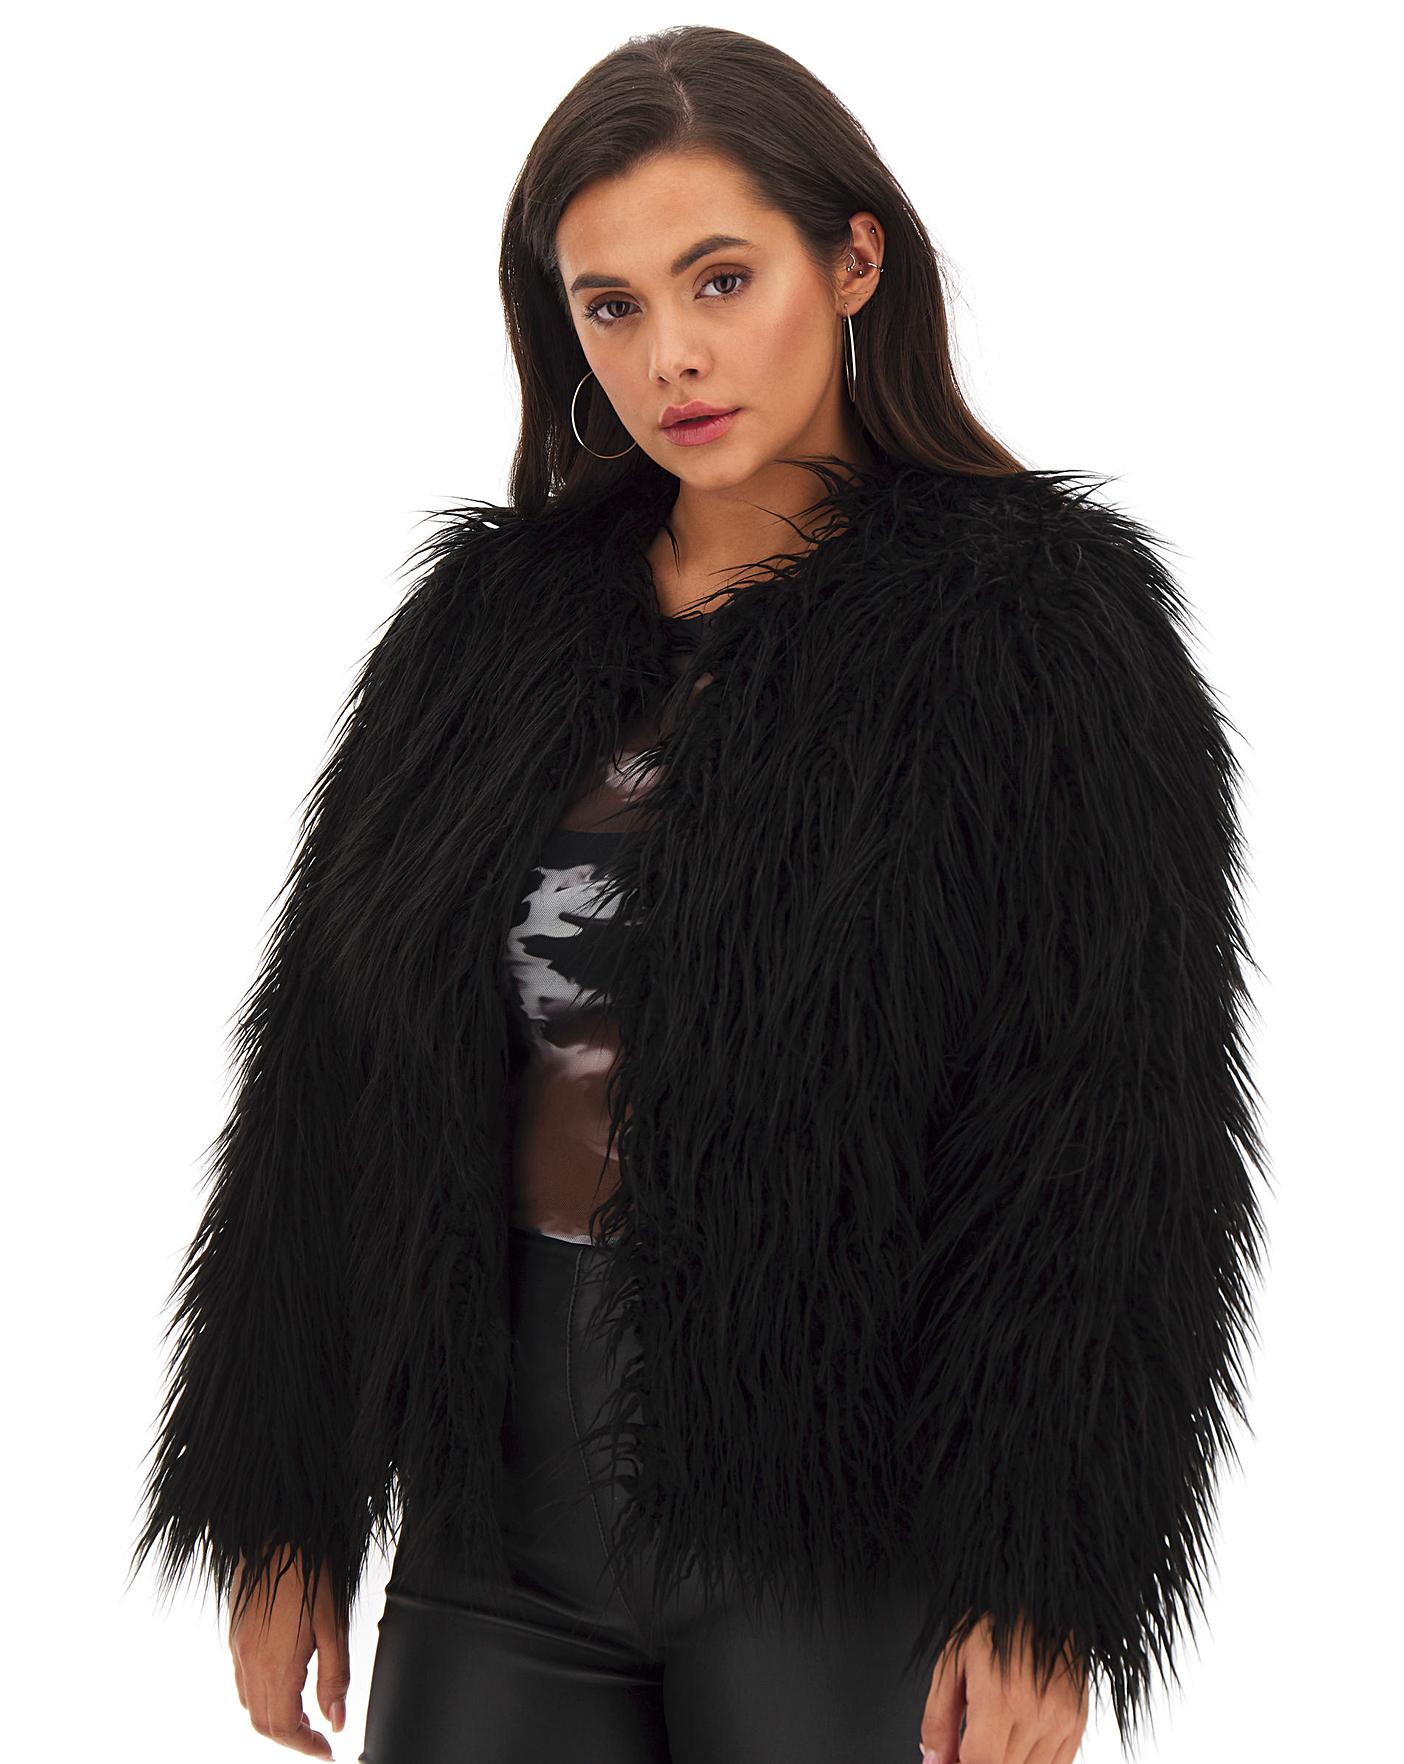 Plus Amaria Black Shaggy Faux Fur Jacket PrettyLittleThing, 51% OFF